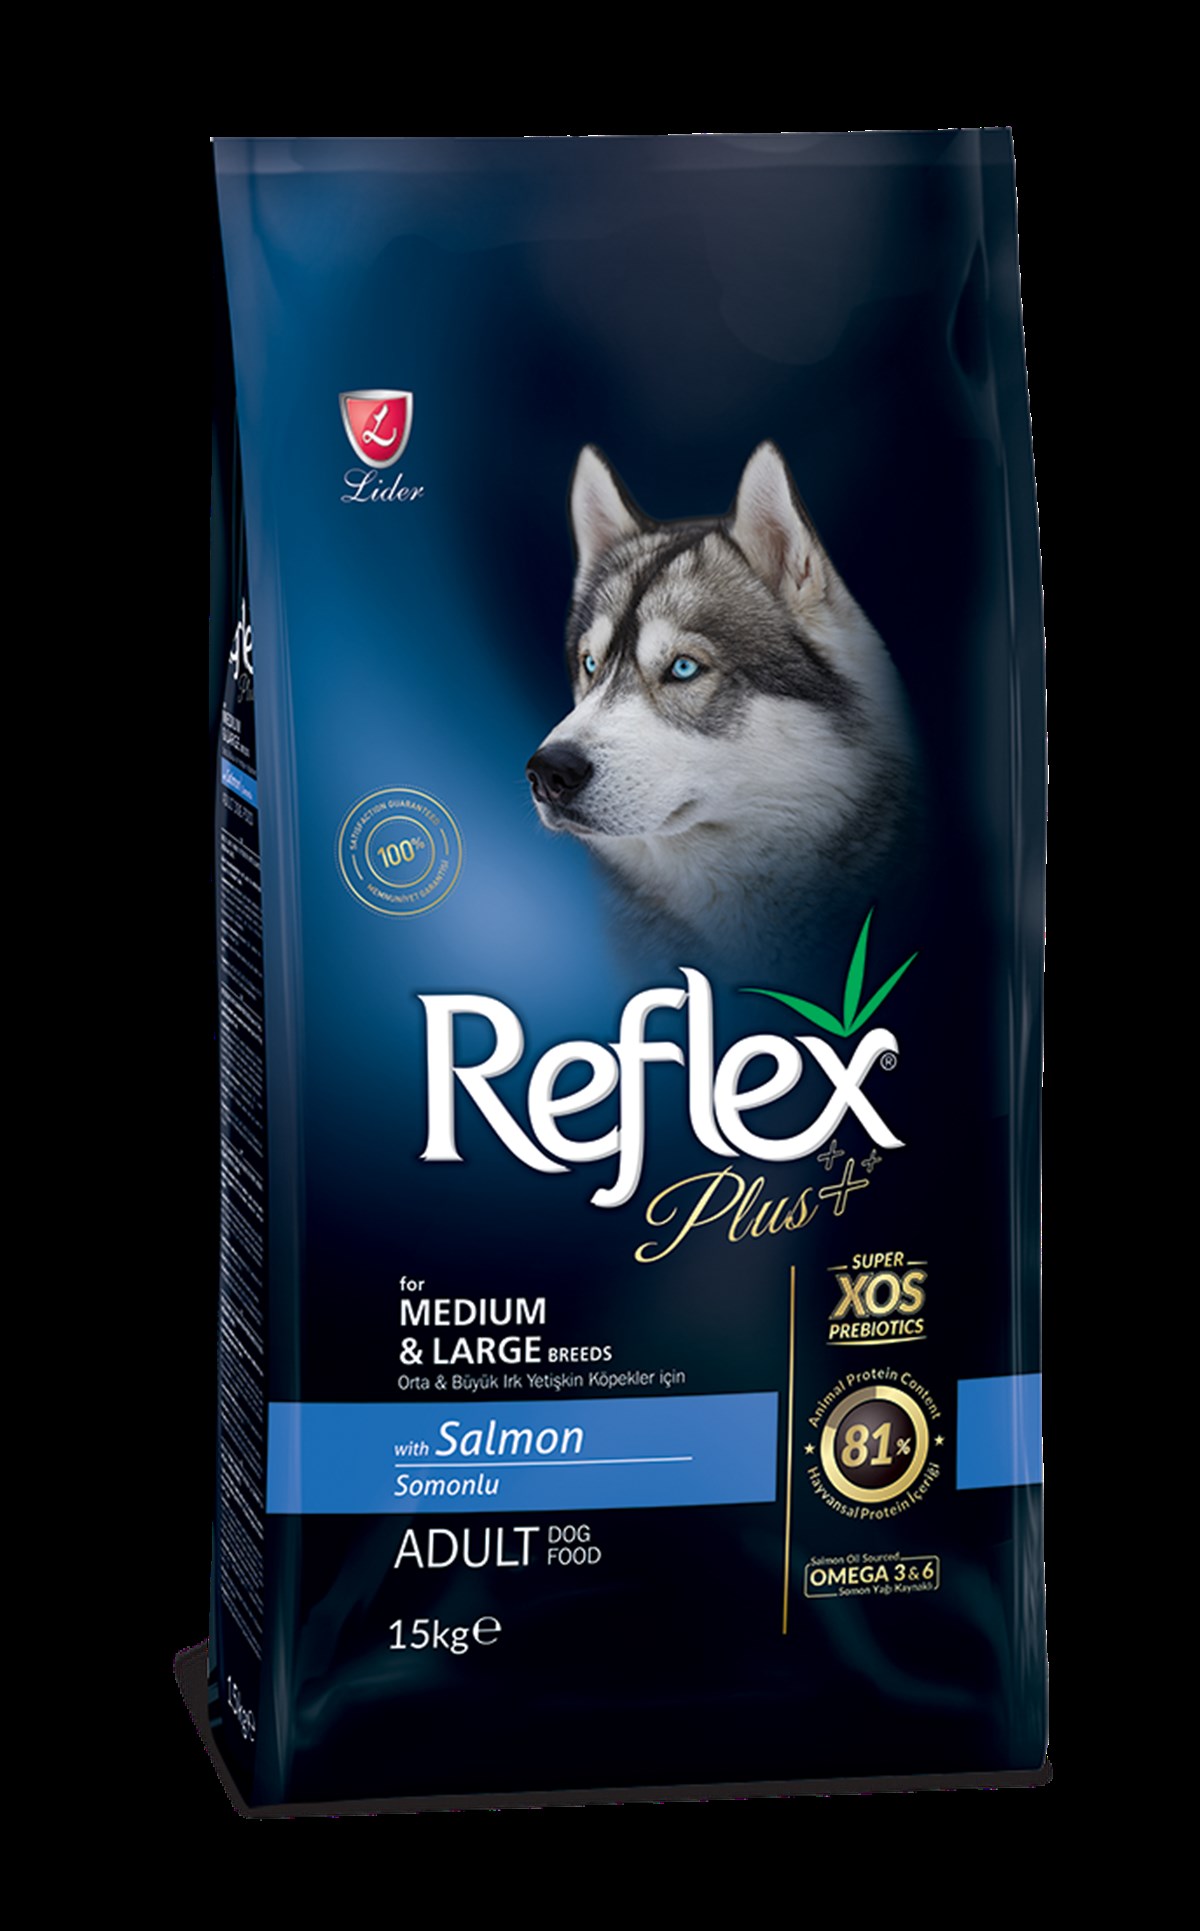 Reflex Plus Somonlu 15 kg Orta ve Büyük Irk Yetişkin Köpek Maması  8698995003476 |Petobur.net 0850 303 28 19